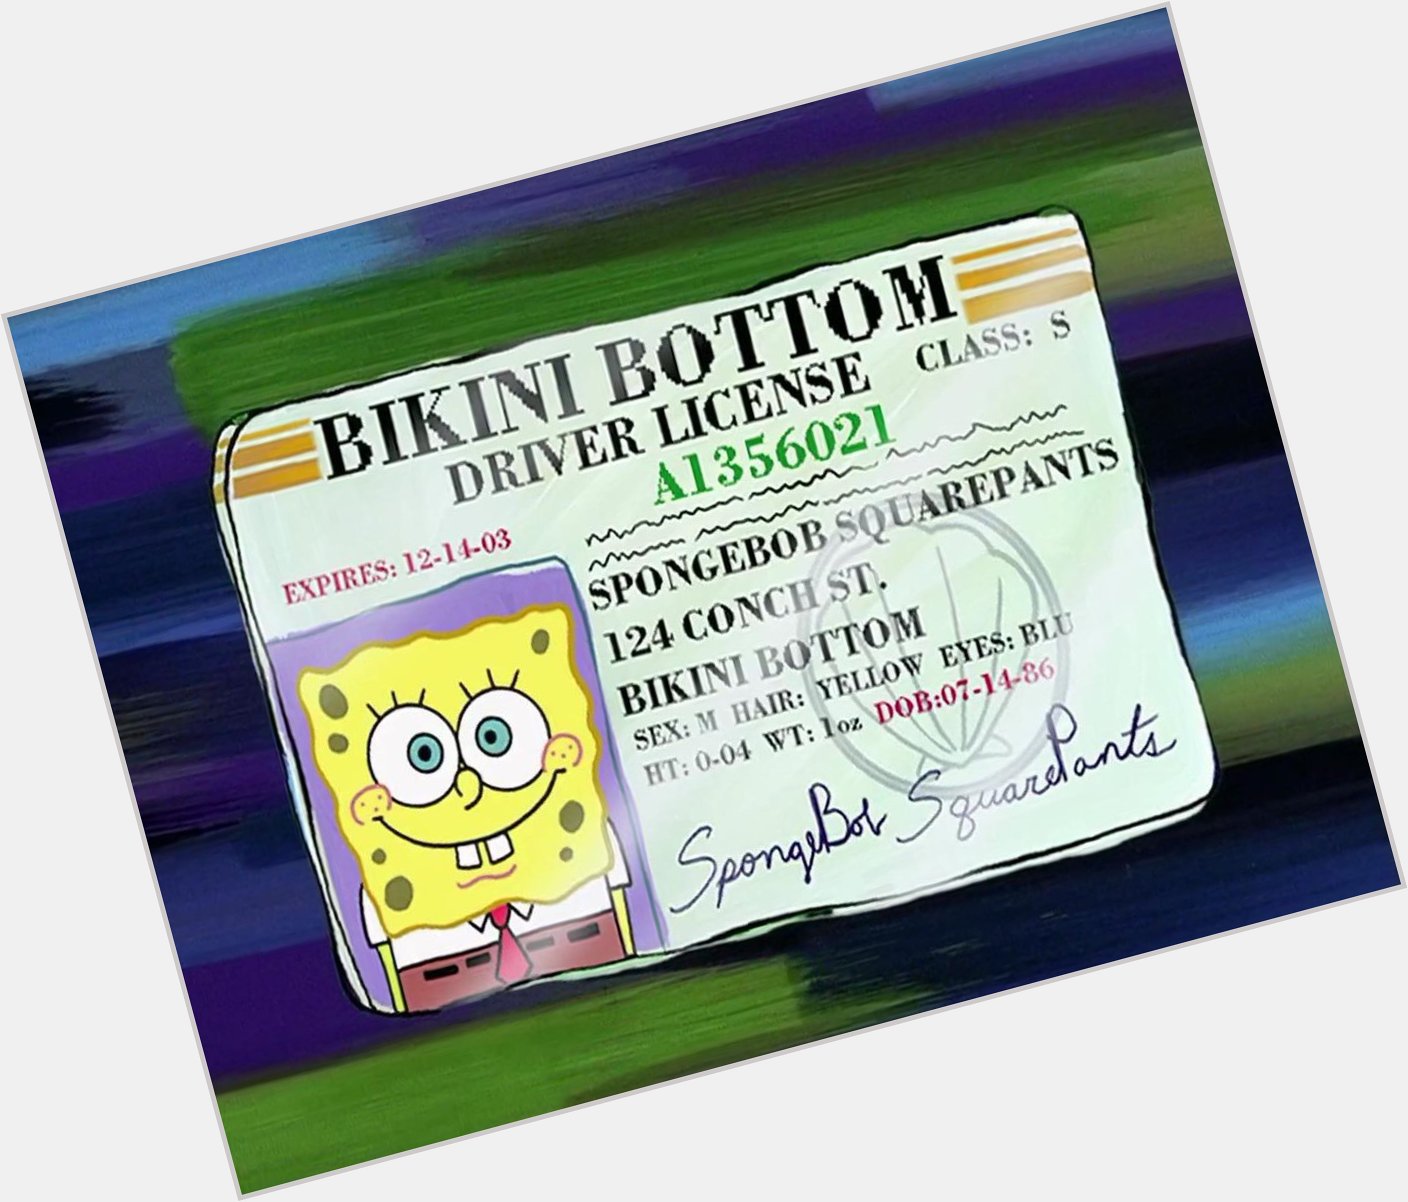 Happy birthday, Spongebob Squarepants!  